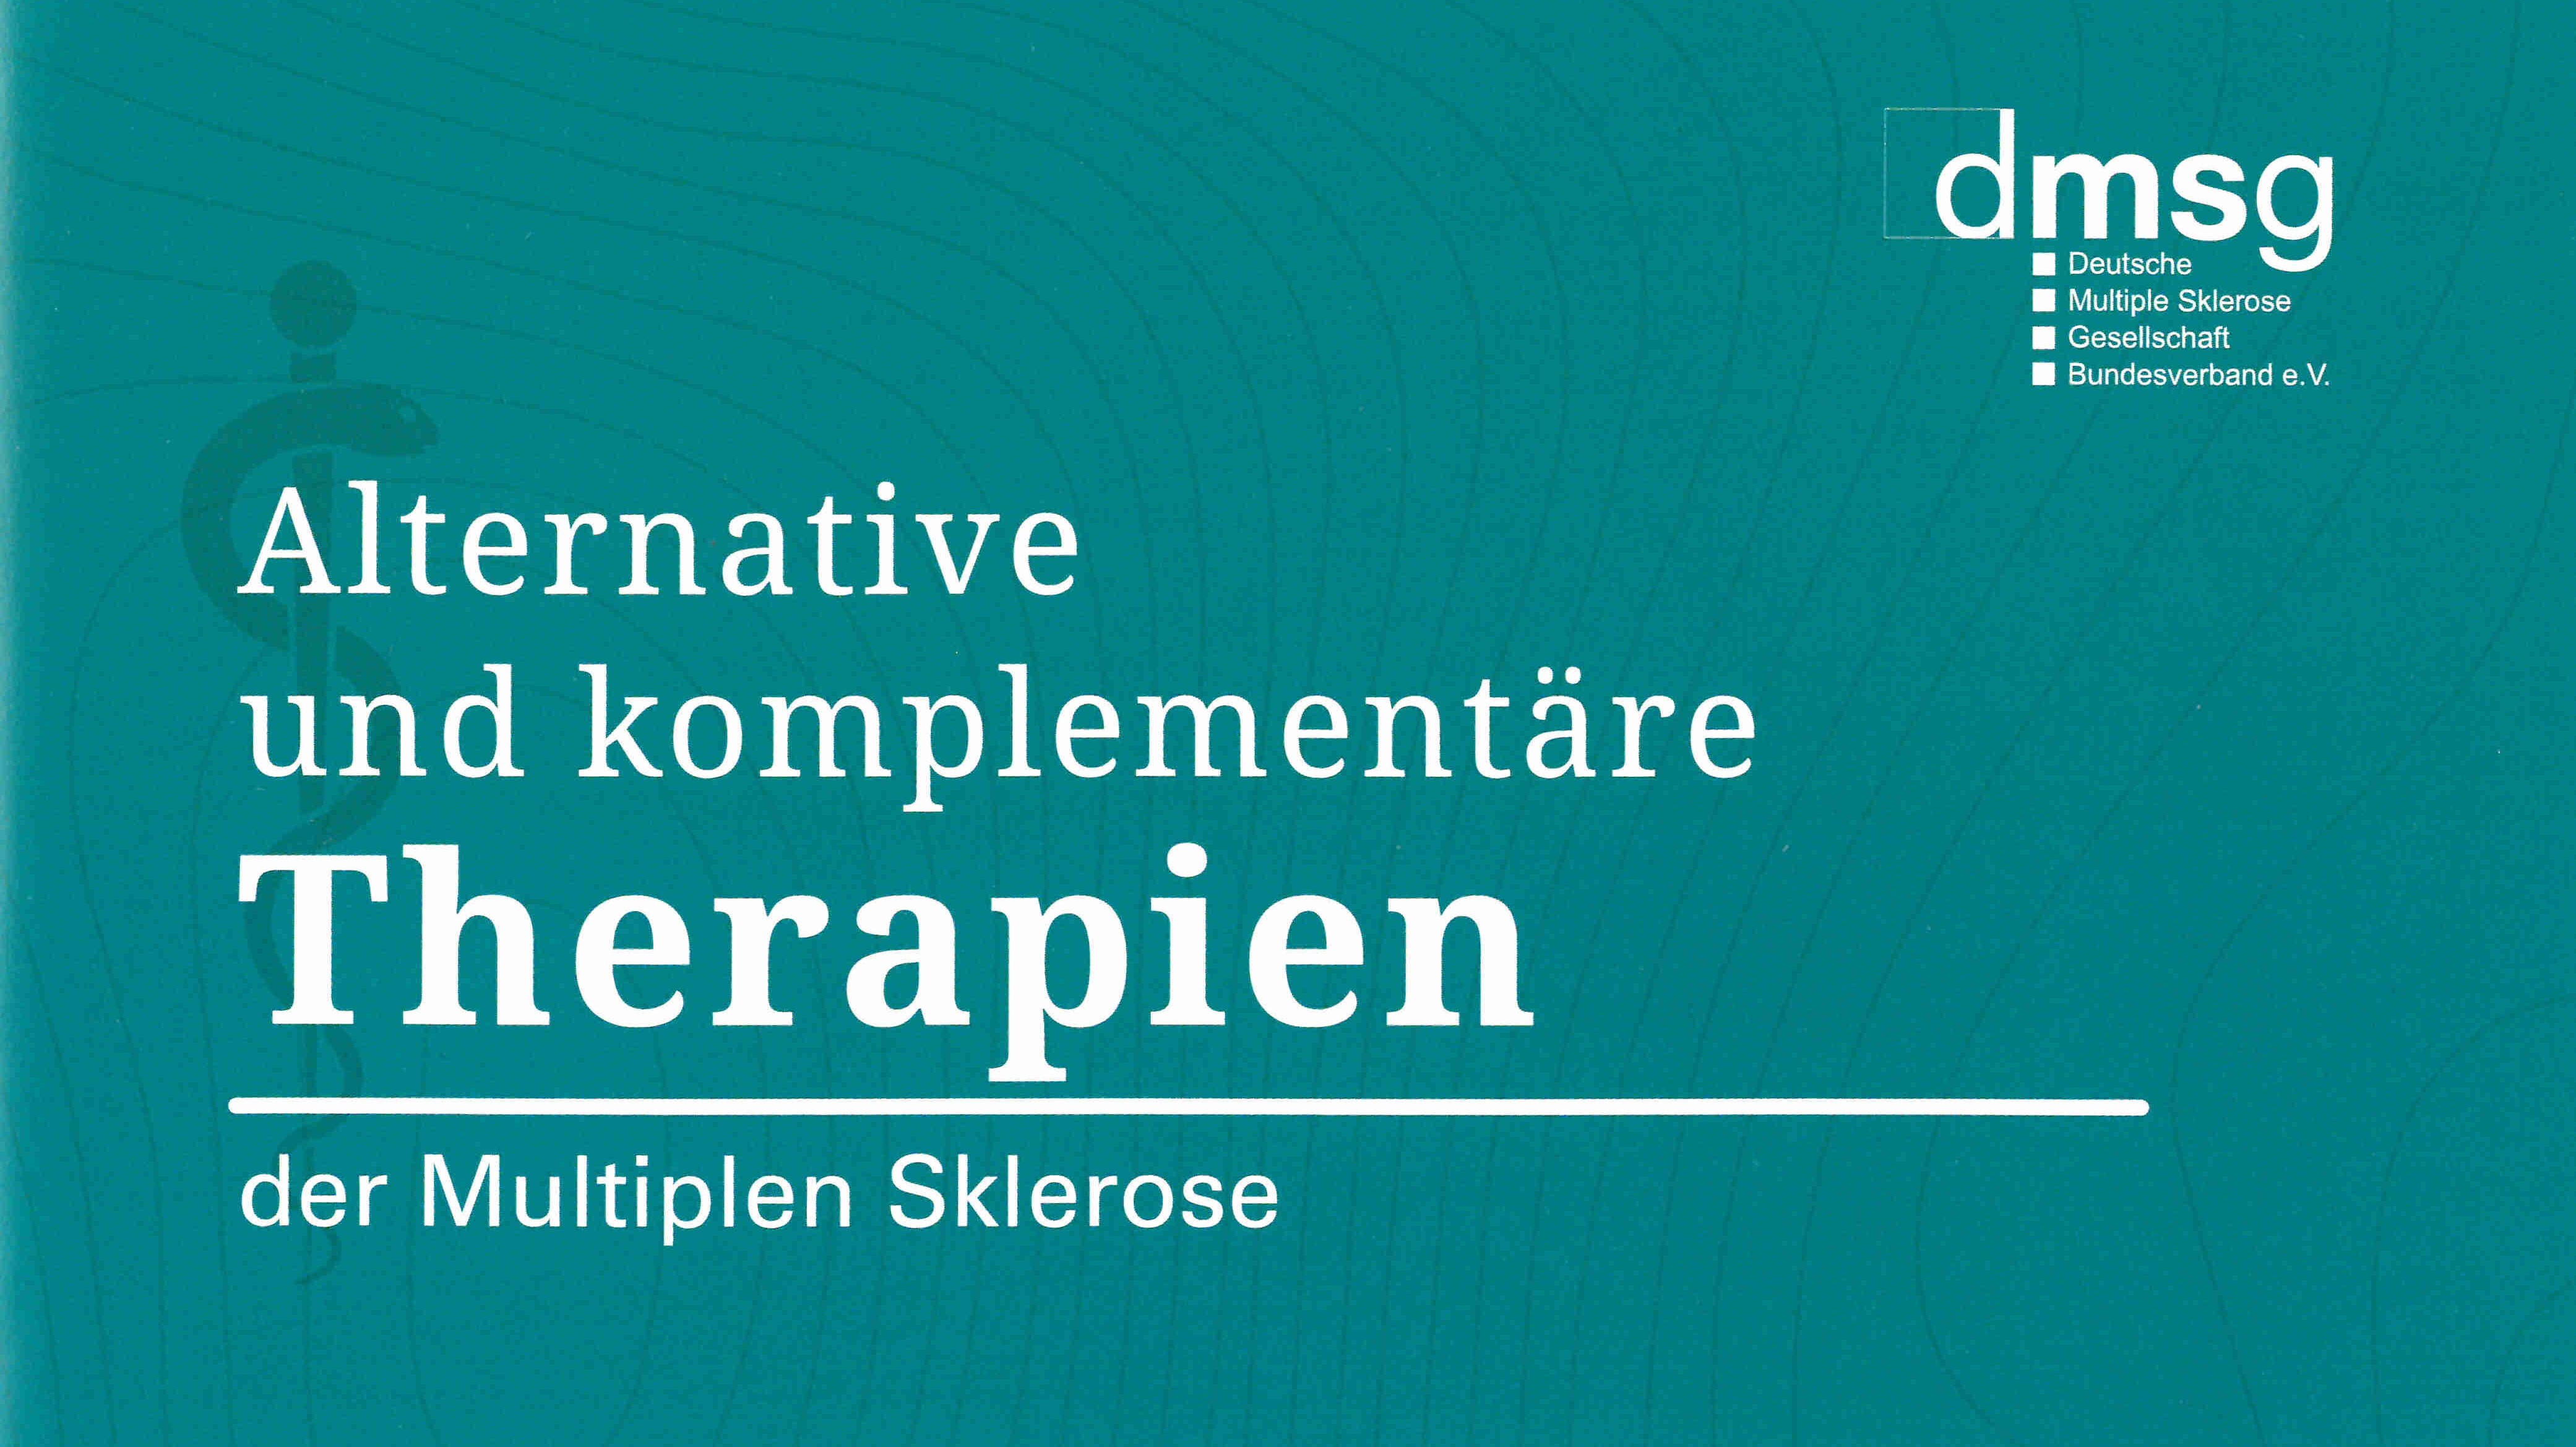 Broschüren-Cover mit dem Titel "Alternative und komplementäre Therapien der MS"